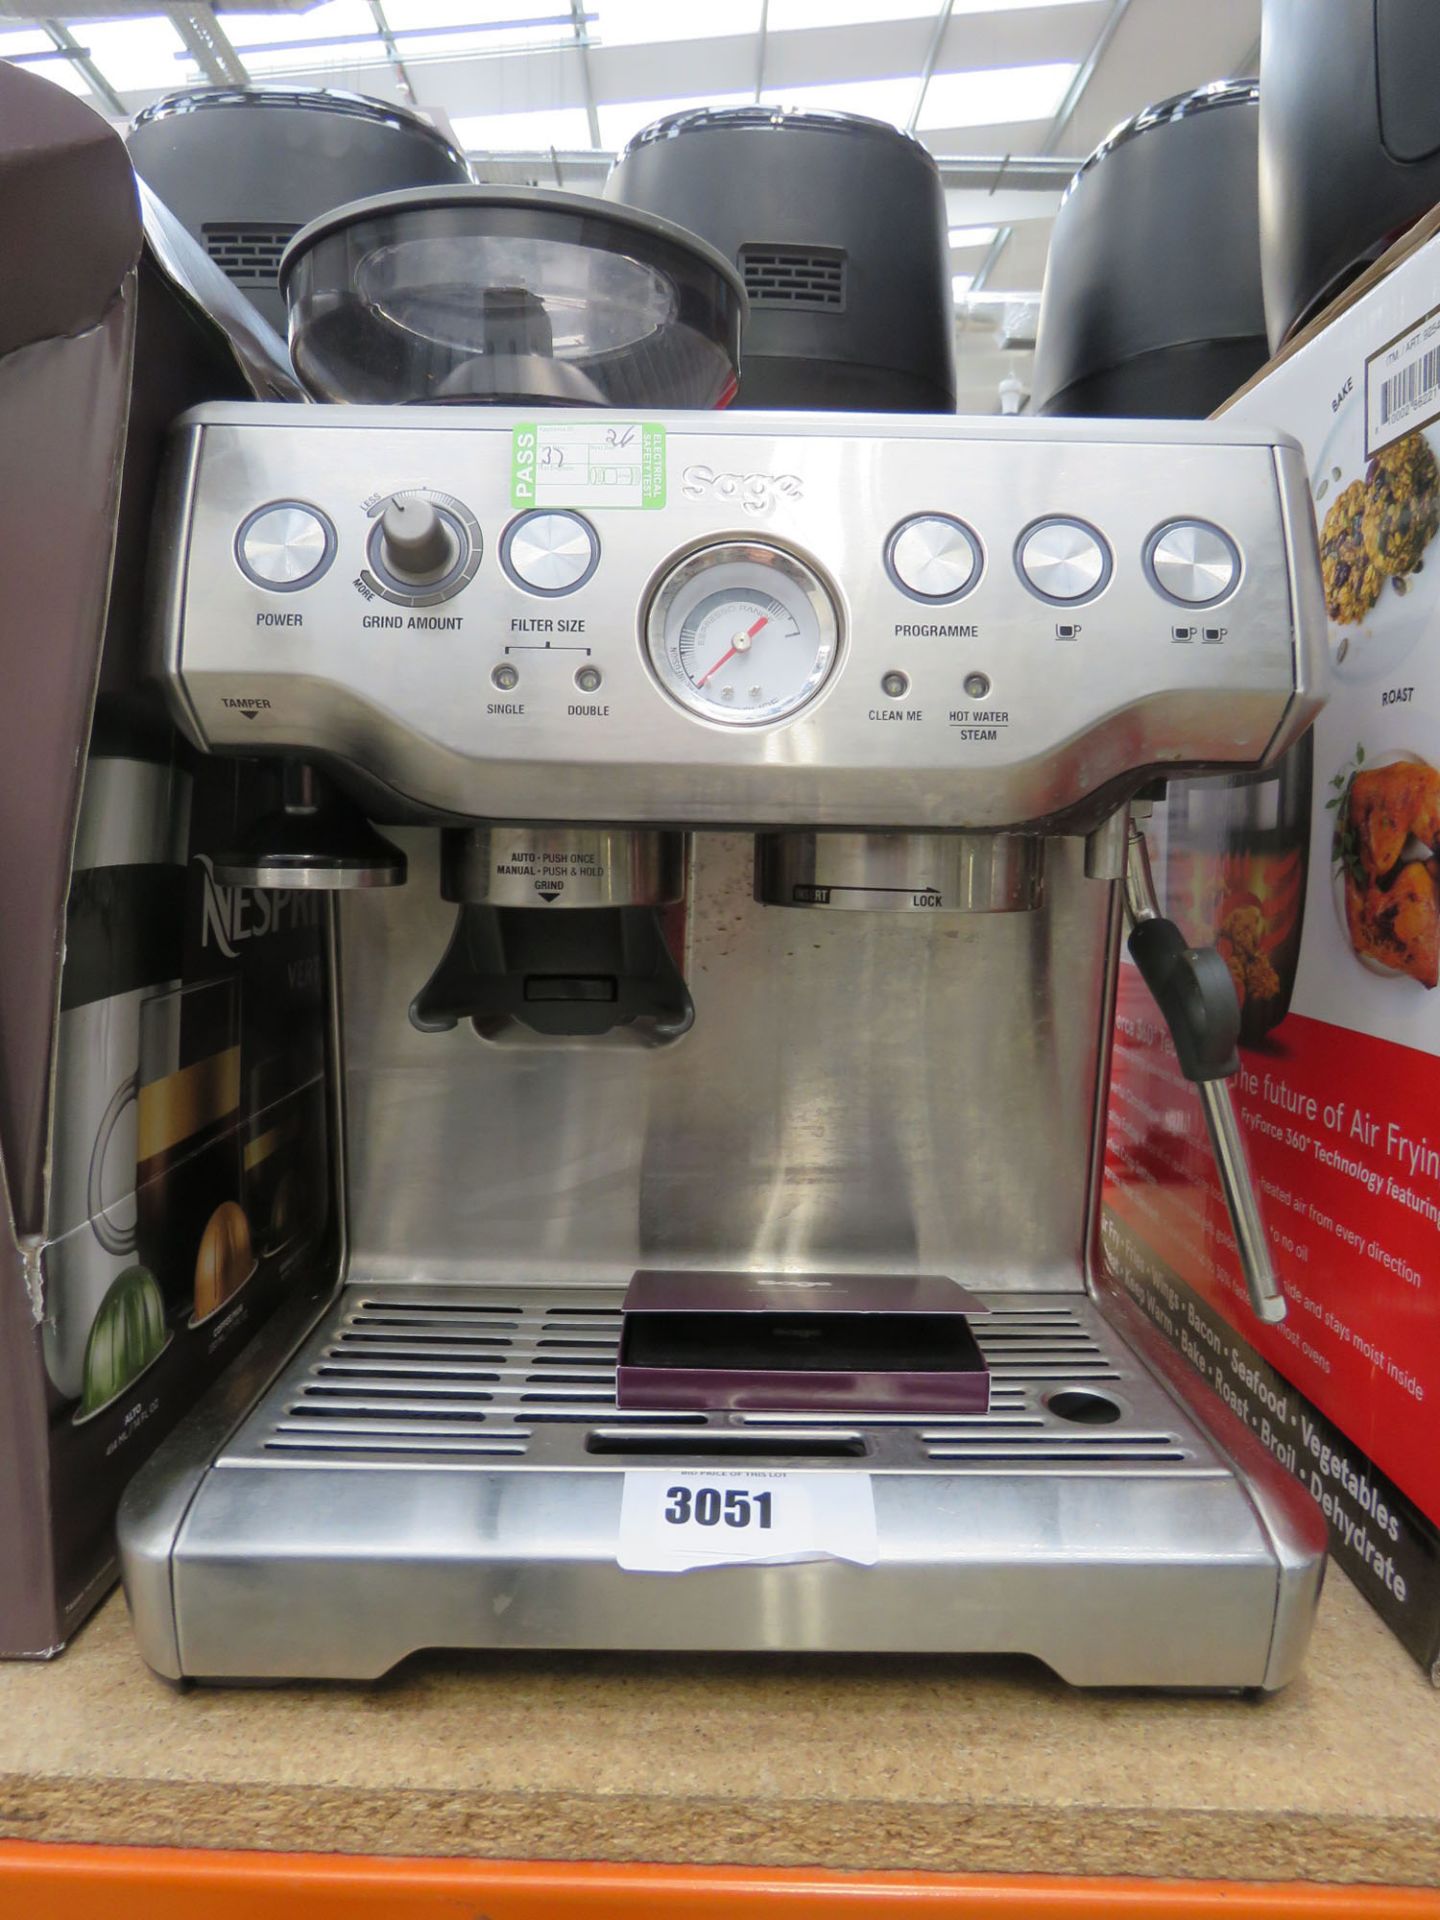 3038 Unboxed Sage Barista express coffee machine